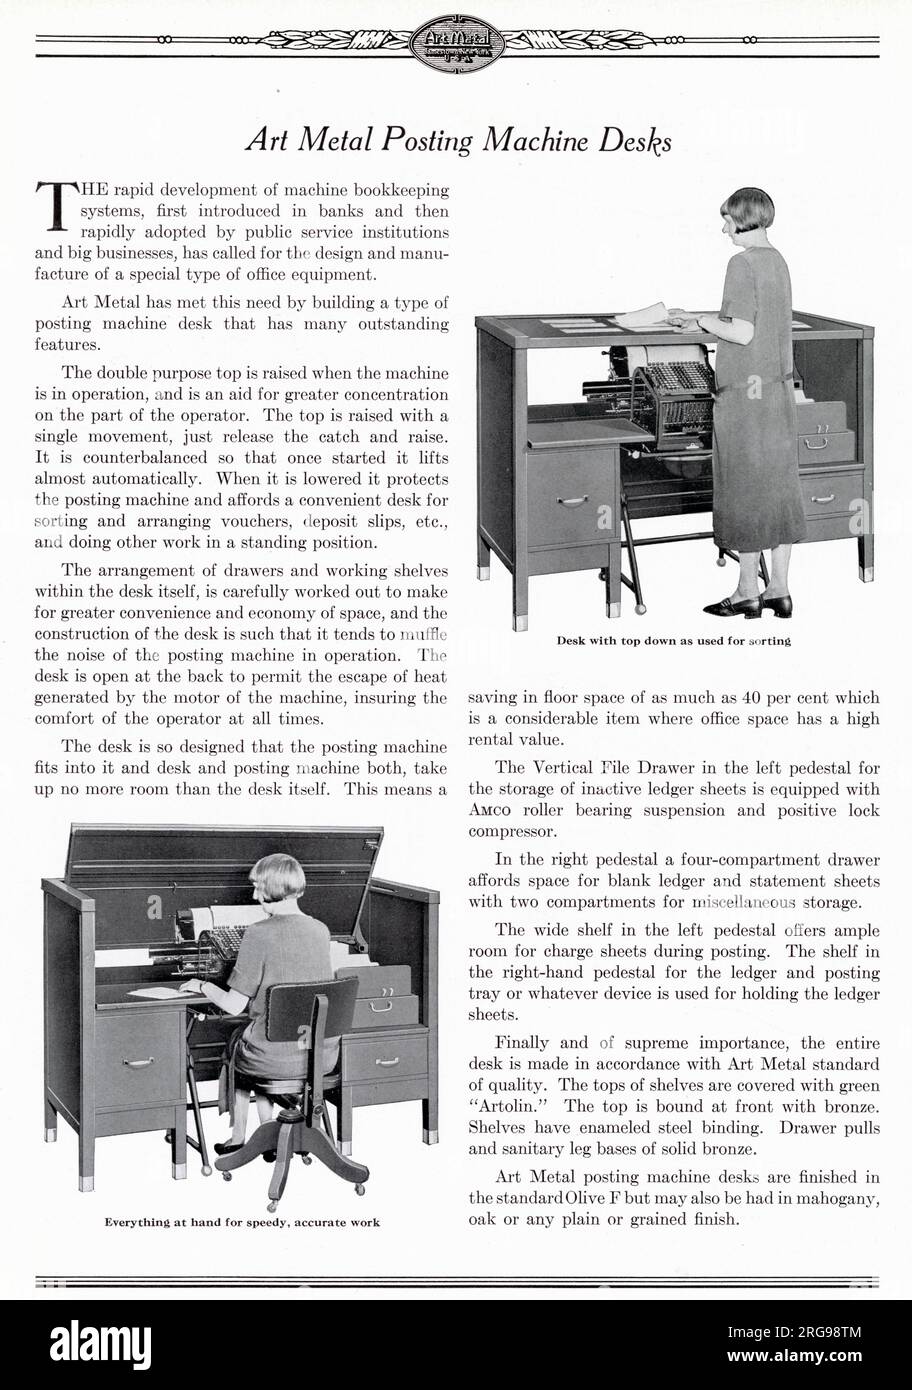 Art Metal Steel Office Equipment, Jamestown, New York, USA - la scrivania Art Metal Posting Machine per l'uso con sistemi di contabilità, con tutto a portata di mano per lavori rapidi e precisi. Foto Stock